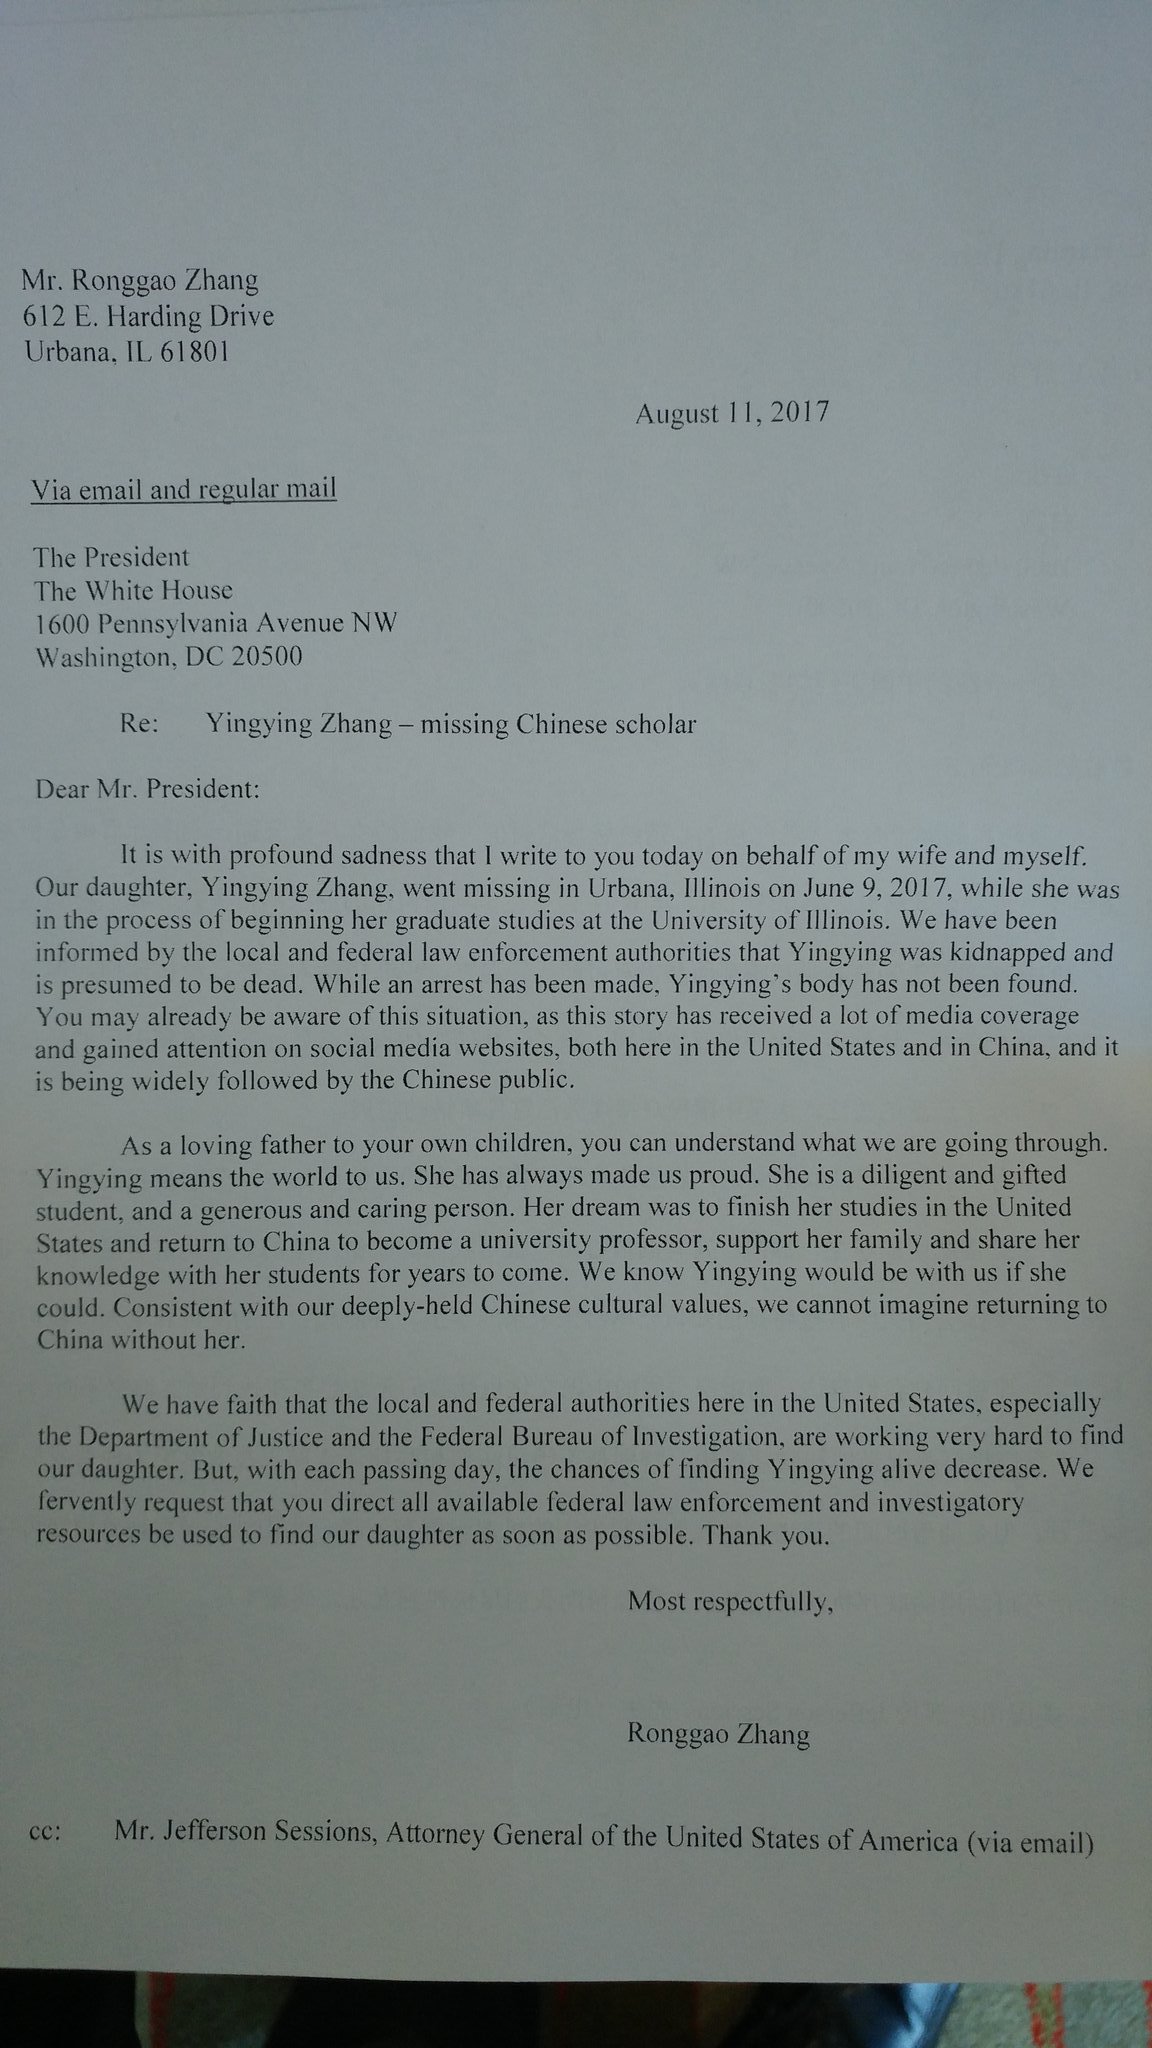  章莹颖家人写给美国总统特朗普的请愿信。